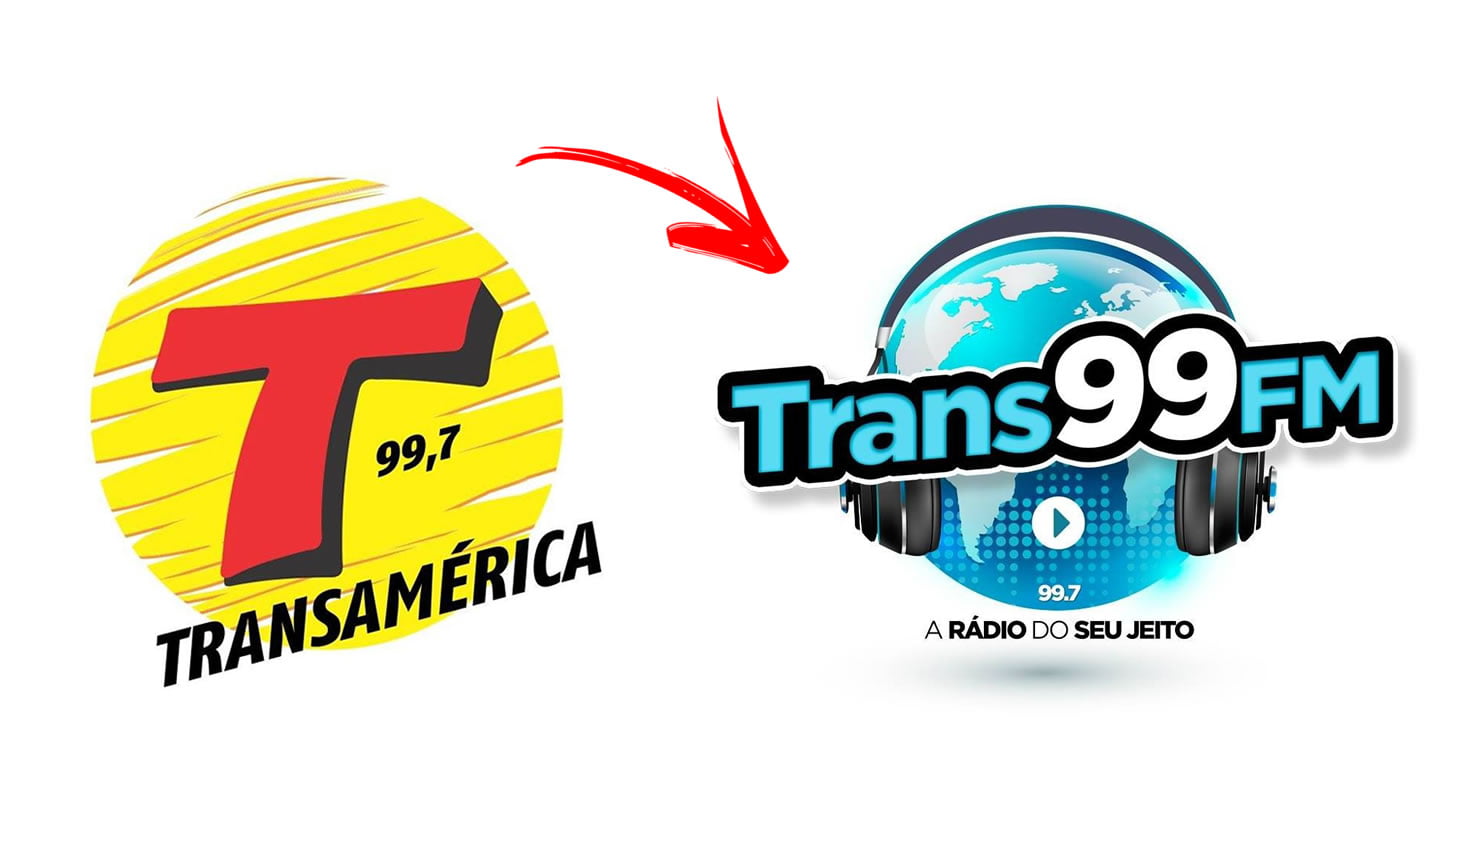 Rádio Transamérica deixa de ser retransmitida na região; 99,7 FM passa a se chamar Trans99FM